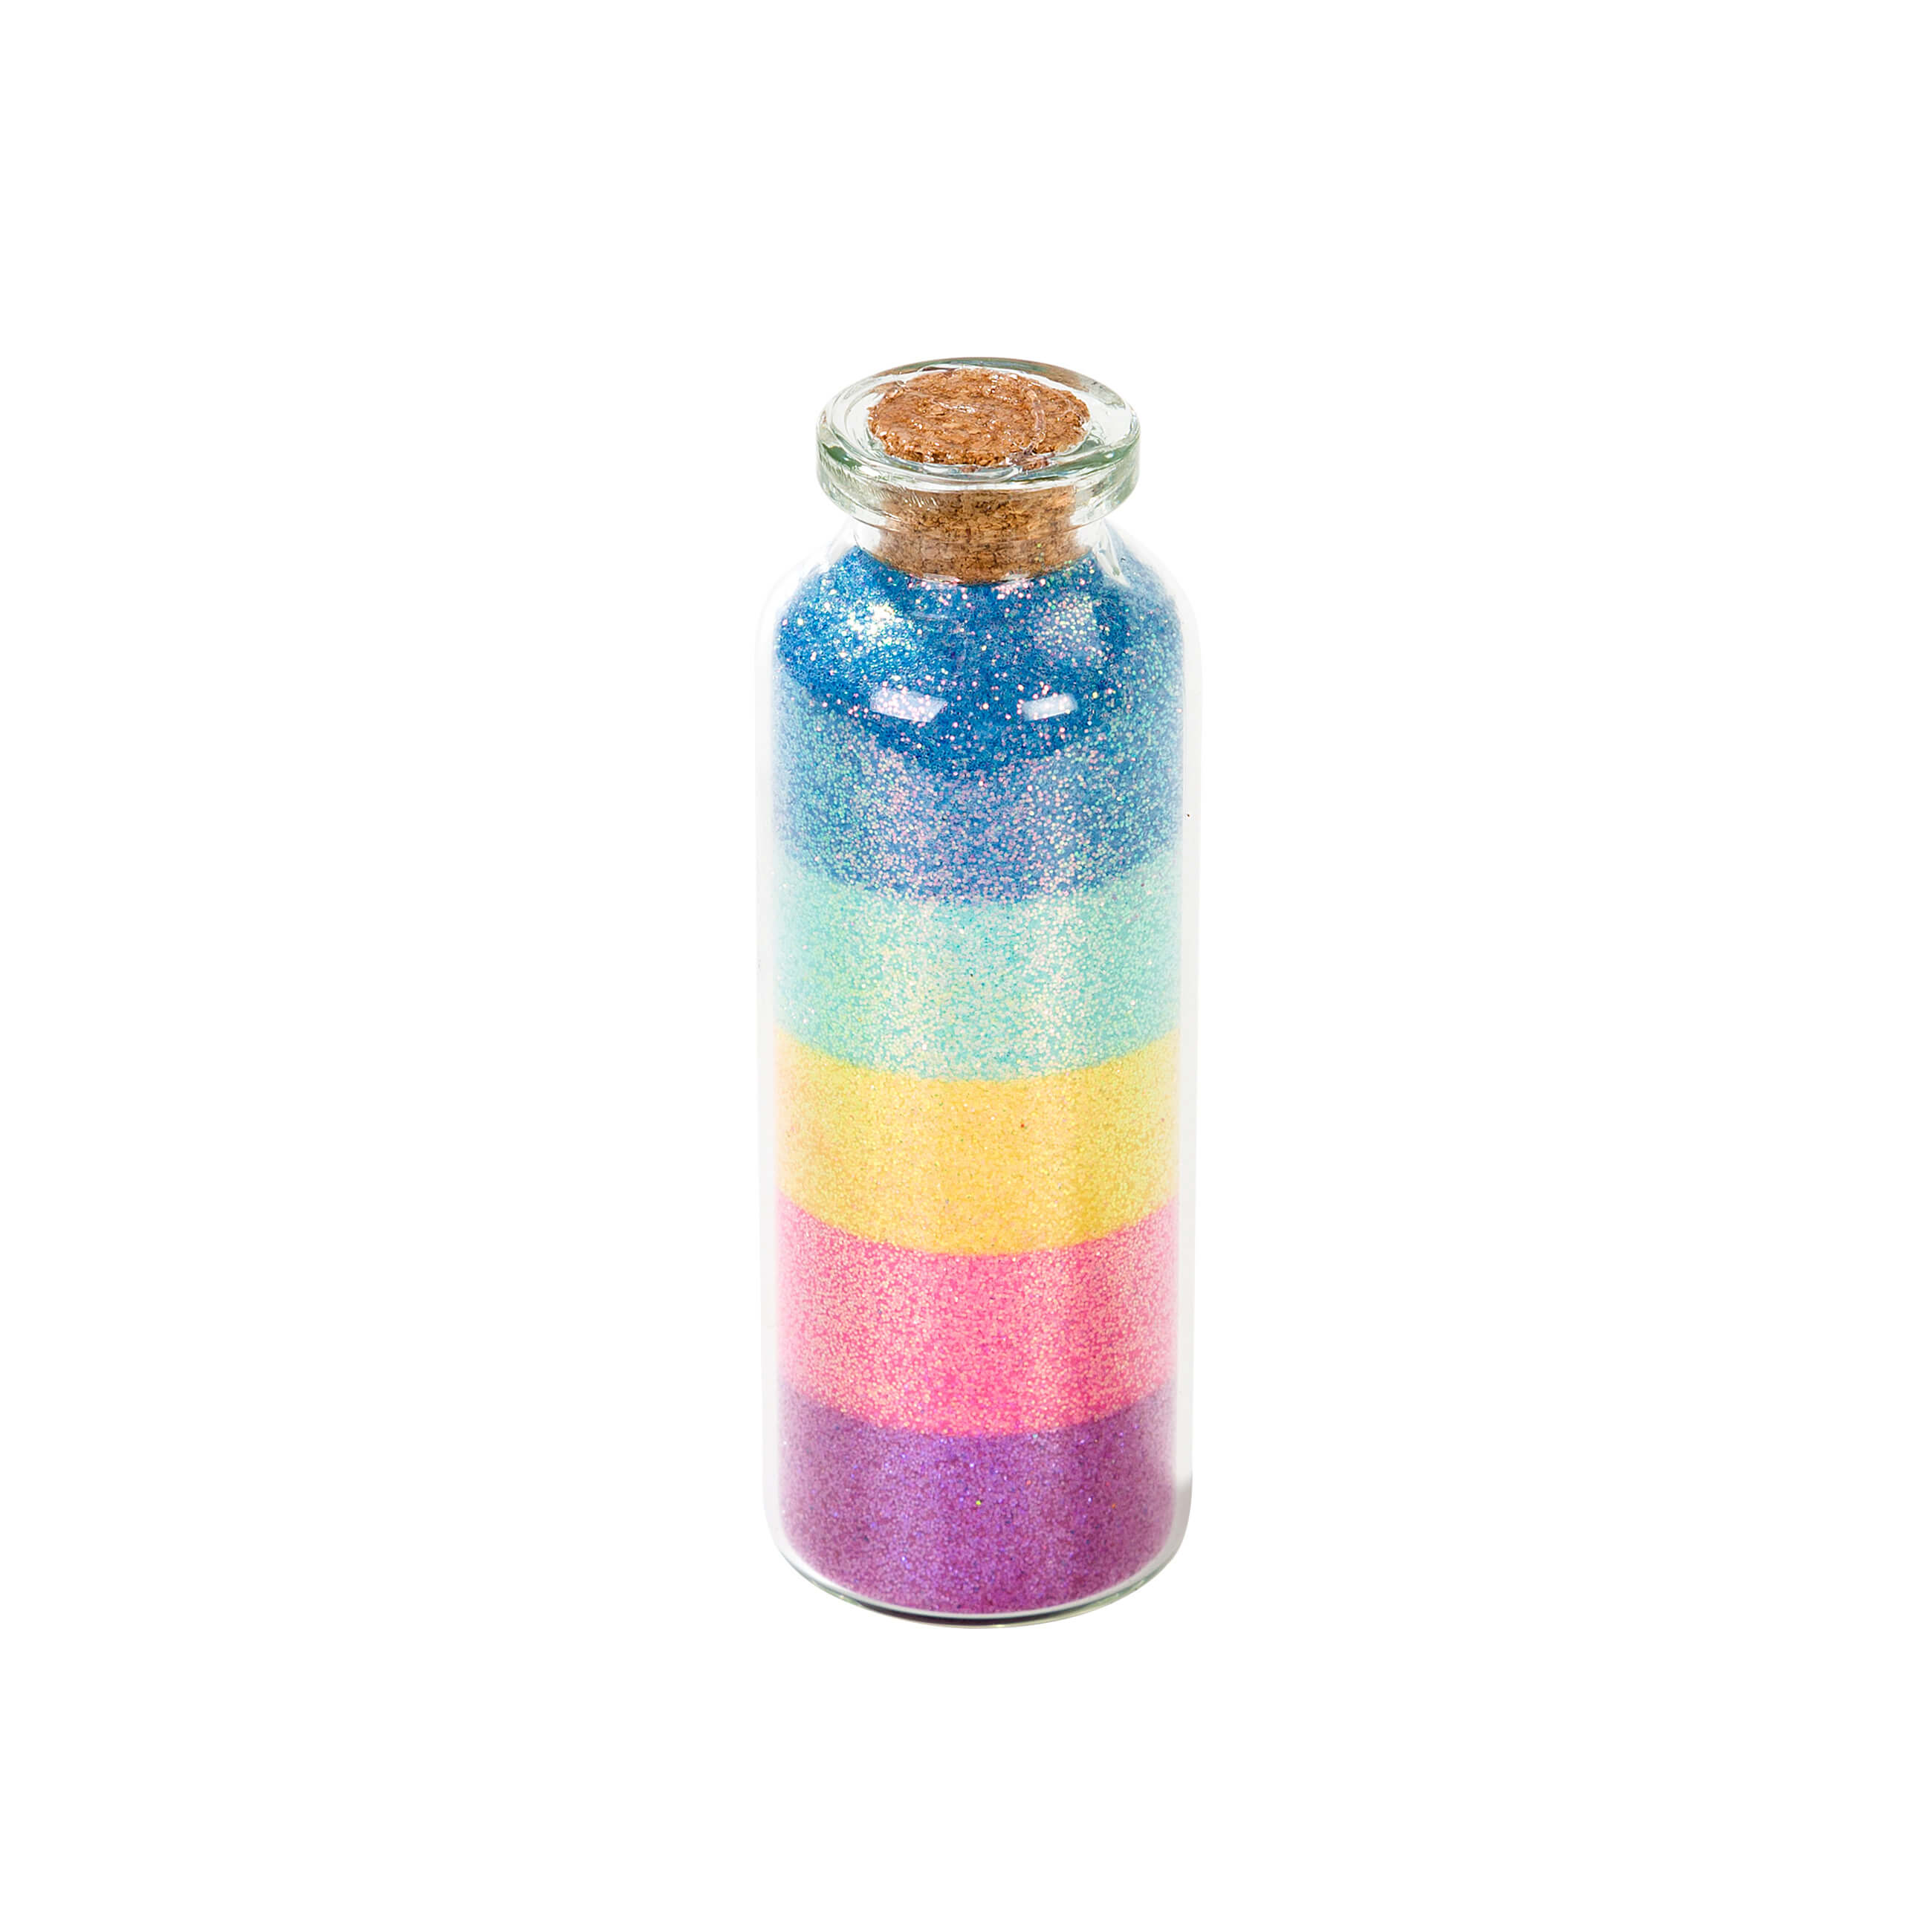 Einhorn Glitzer in Regenbogen-Farben im Glas